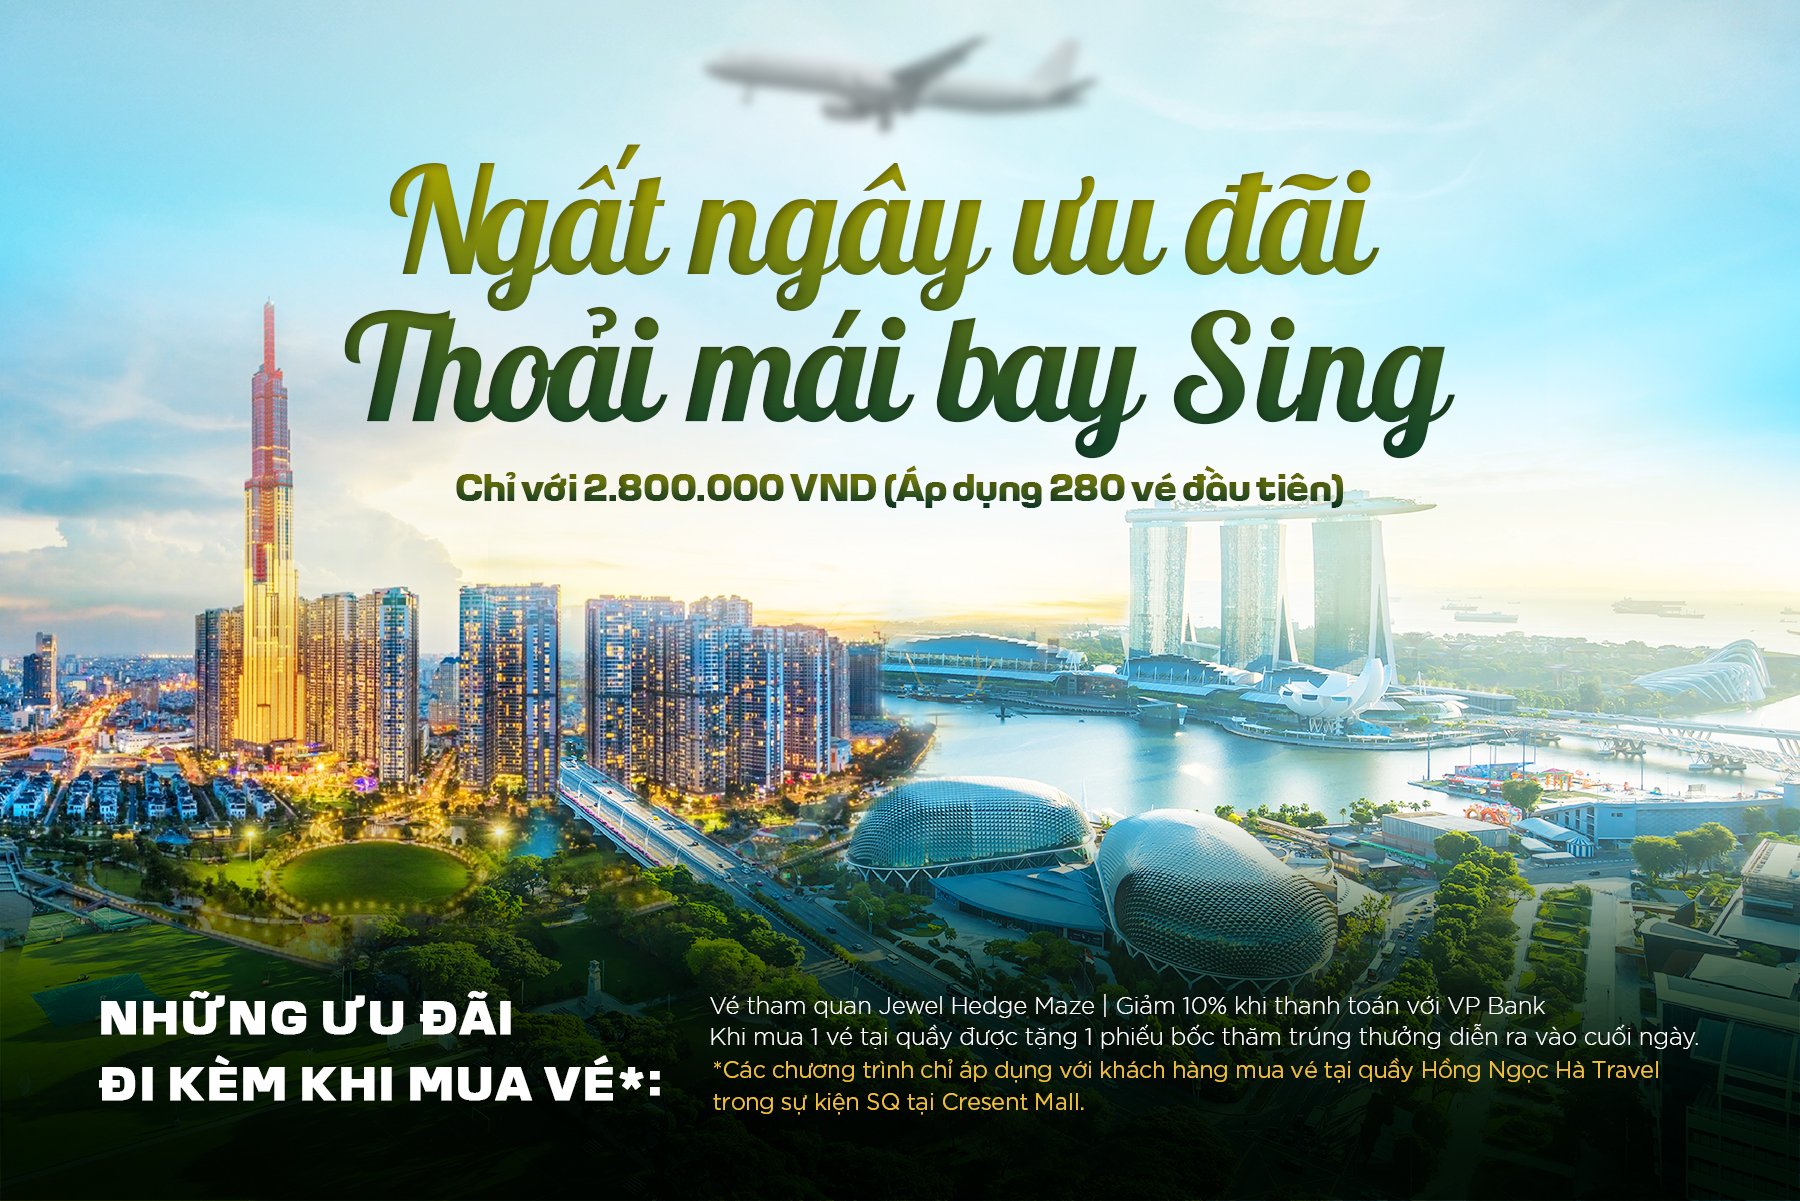 SINGAPORE AIRLINES – NGÀY HỘI DU LỊCH “TIME TO FLY” – ƯU ĐÃI DÀNH CHO TÍN ĐỒ DU LỊCH TẠI CRESCENT MALL